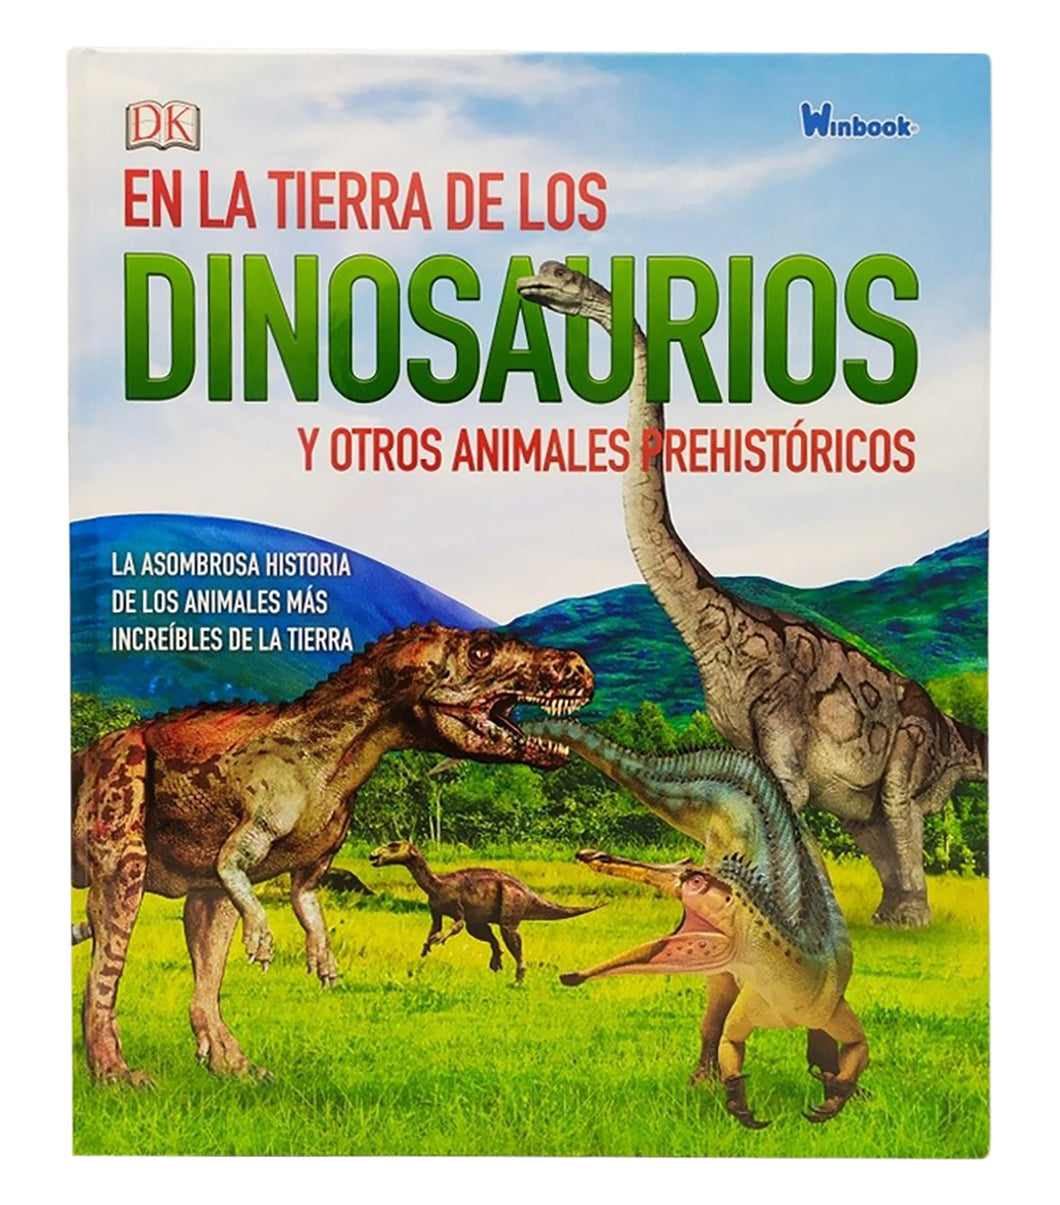 En la tierra de los dinosaurios y otros animales prehistoricos